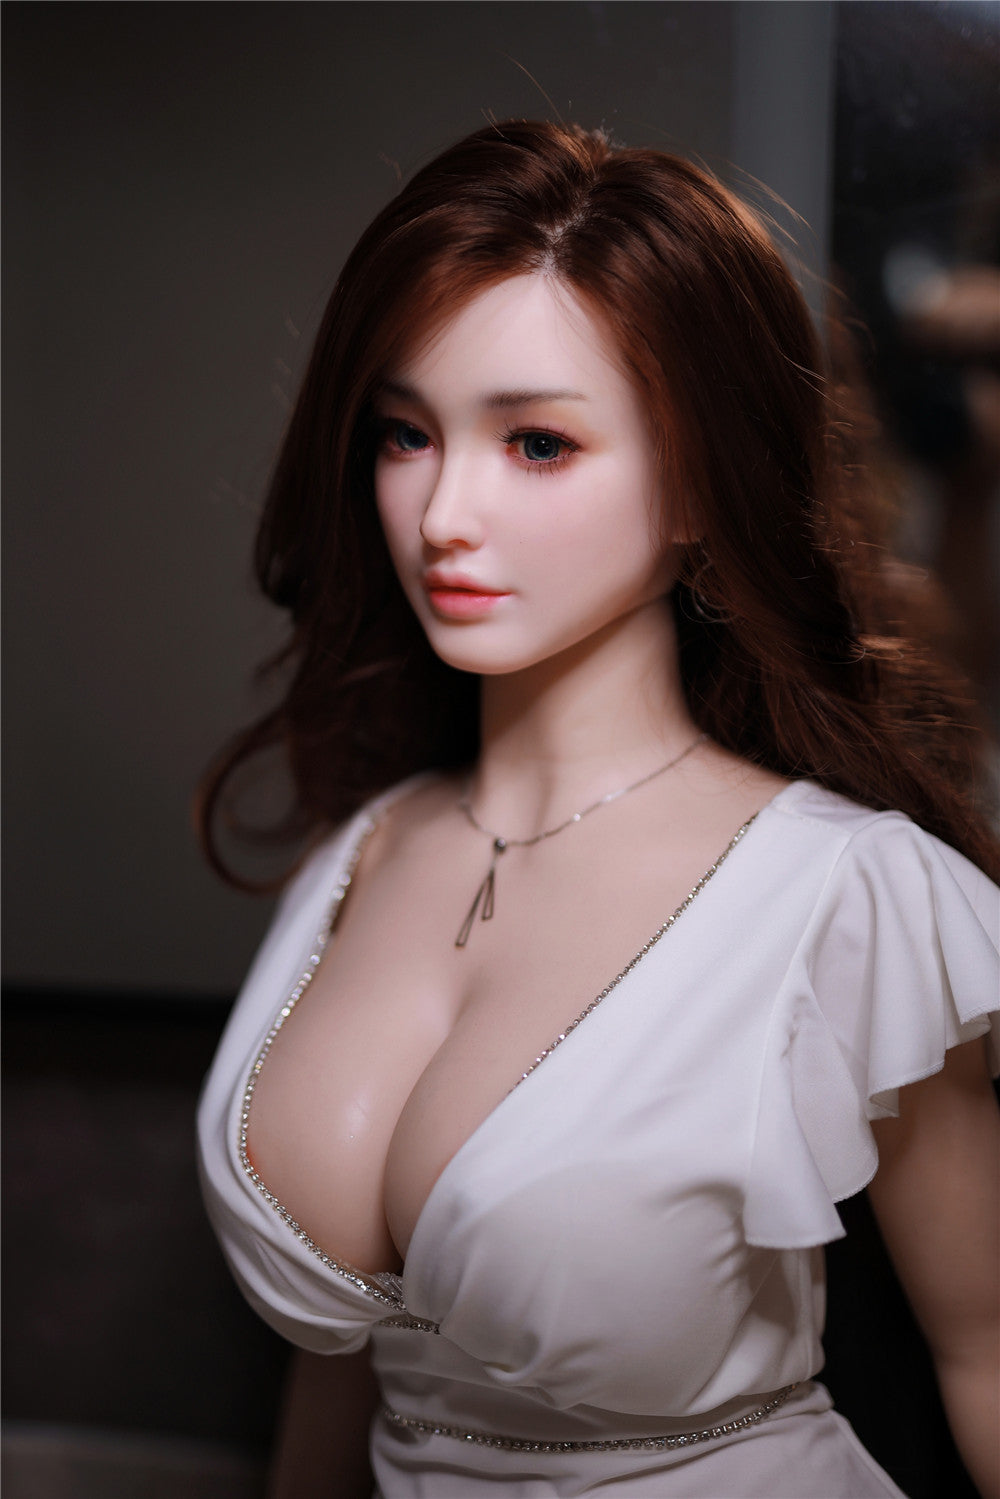 JY Doll - Lifelike Love Doll - 5ft 4in (163cm) - Scarlett - Love Dolls 4U